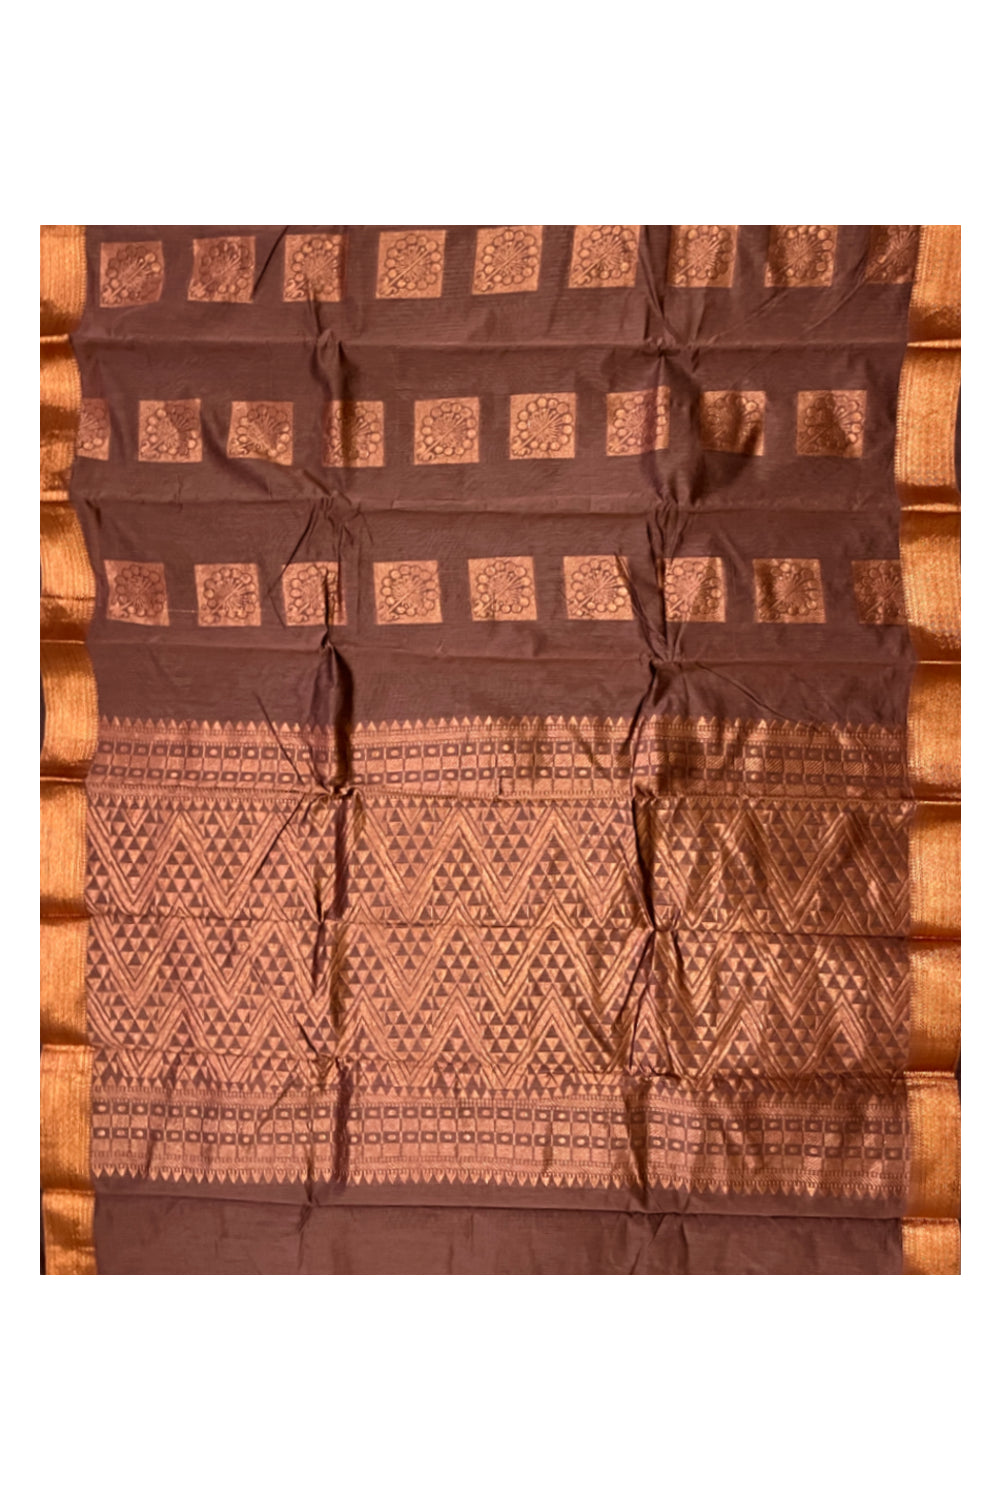 Southloom Cotton Silk Brown Designer Saree with Copper Zari Motifs